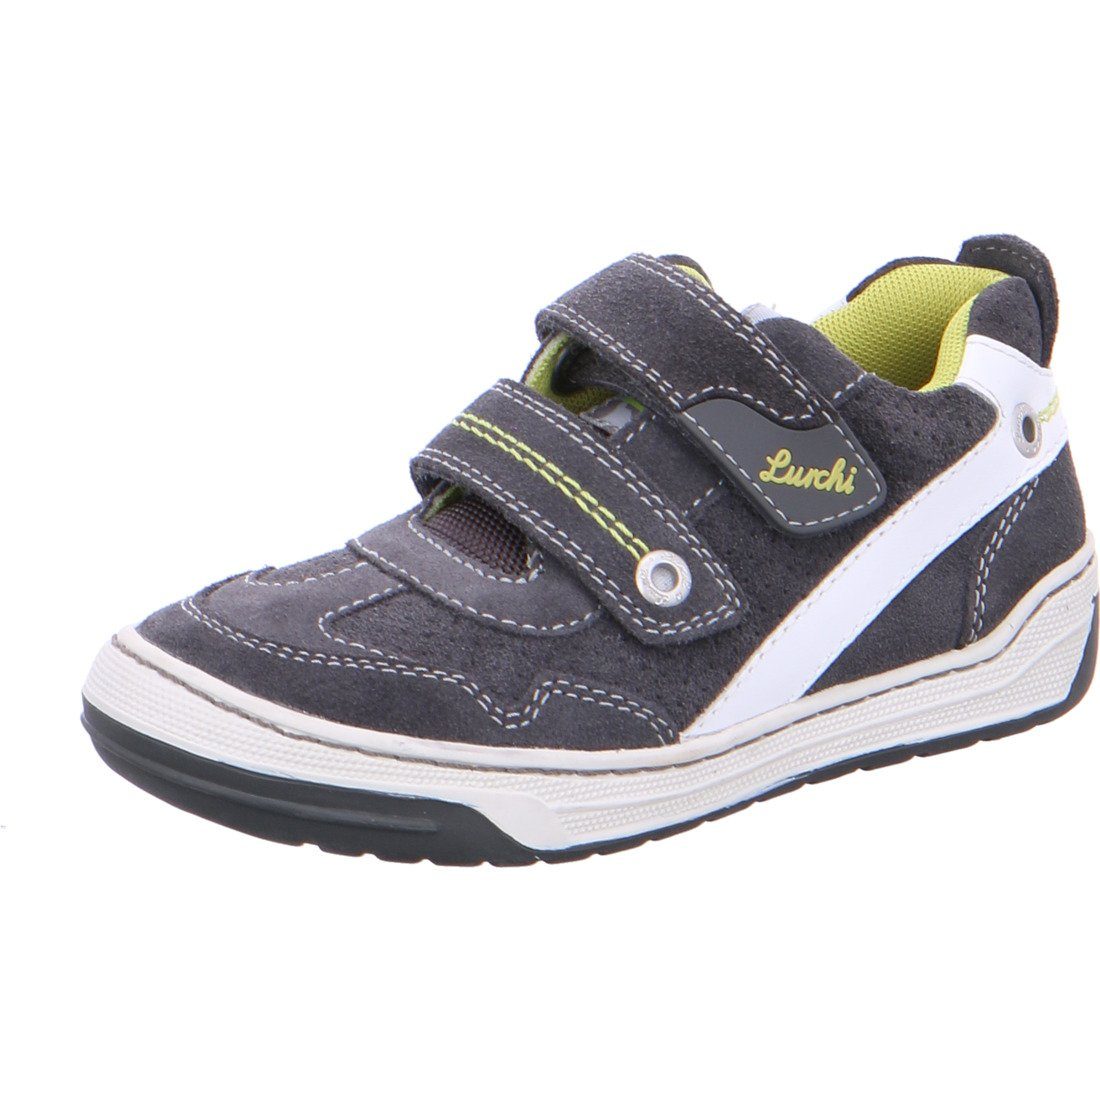 Lurchi - Jungen Sneaker Sneaker Rauleder grau Schuhe, 036954 Lurchi Bruce